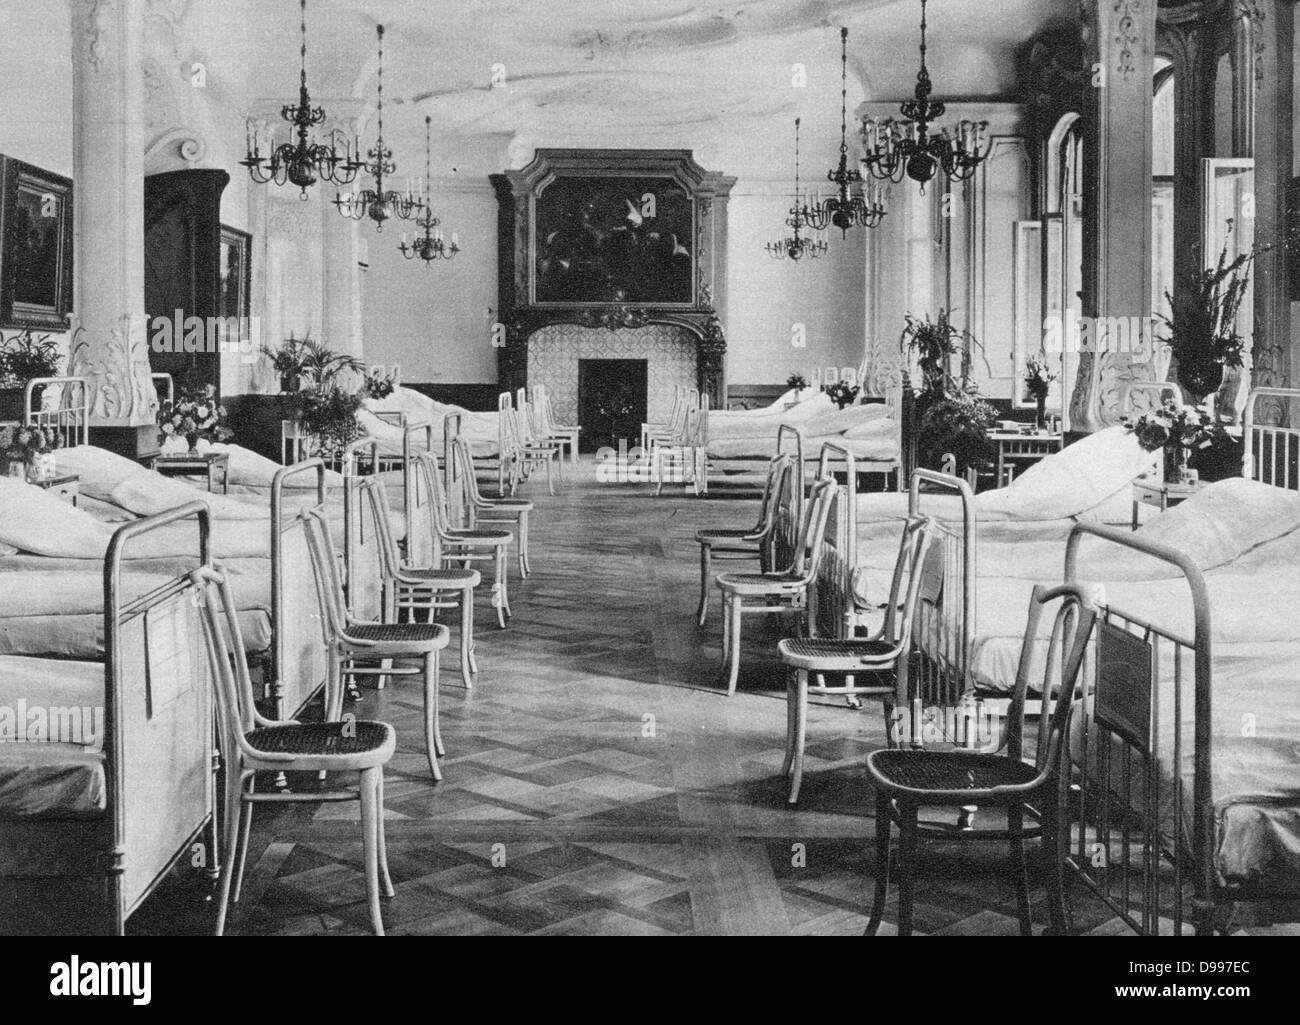 Der erste Weltkrieg 1914-1918: Station in einem Haus in Frankfurt-am-Main umgewandelt in ein deutsches Lazarett, 1915. Armee, Medizin, Möbel, Stuhl, bugholz Stockfoto